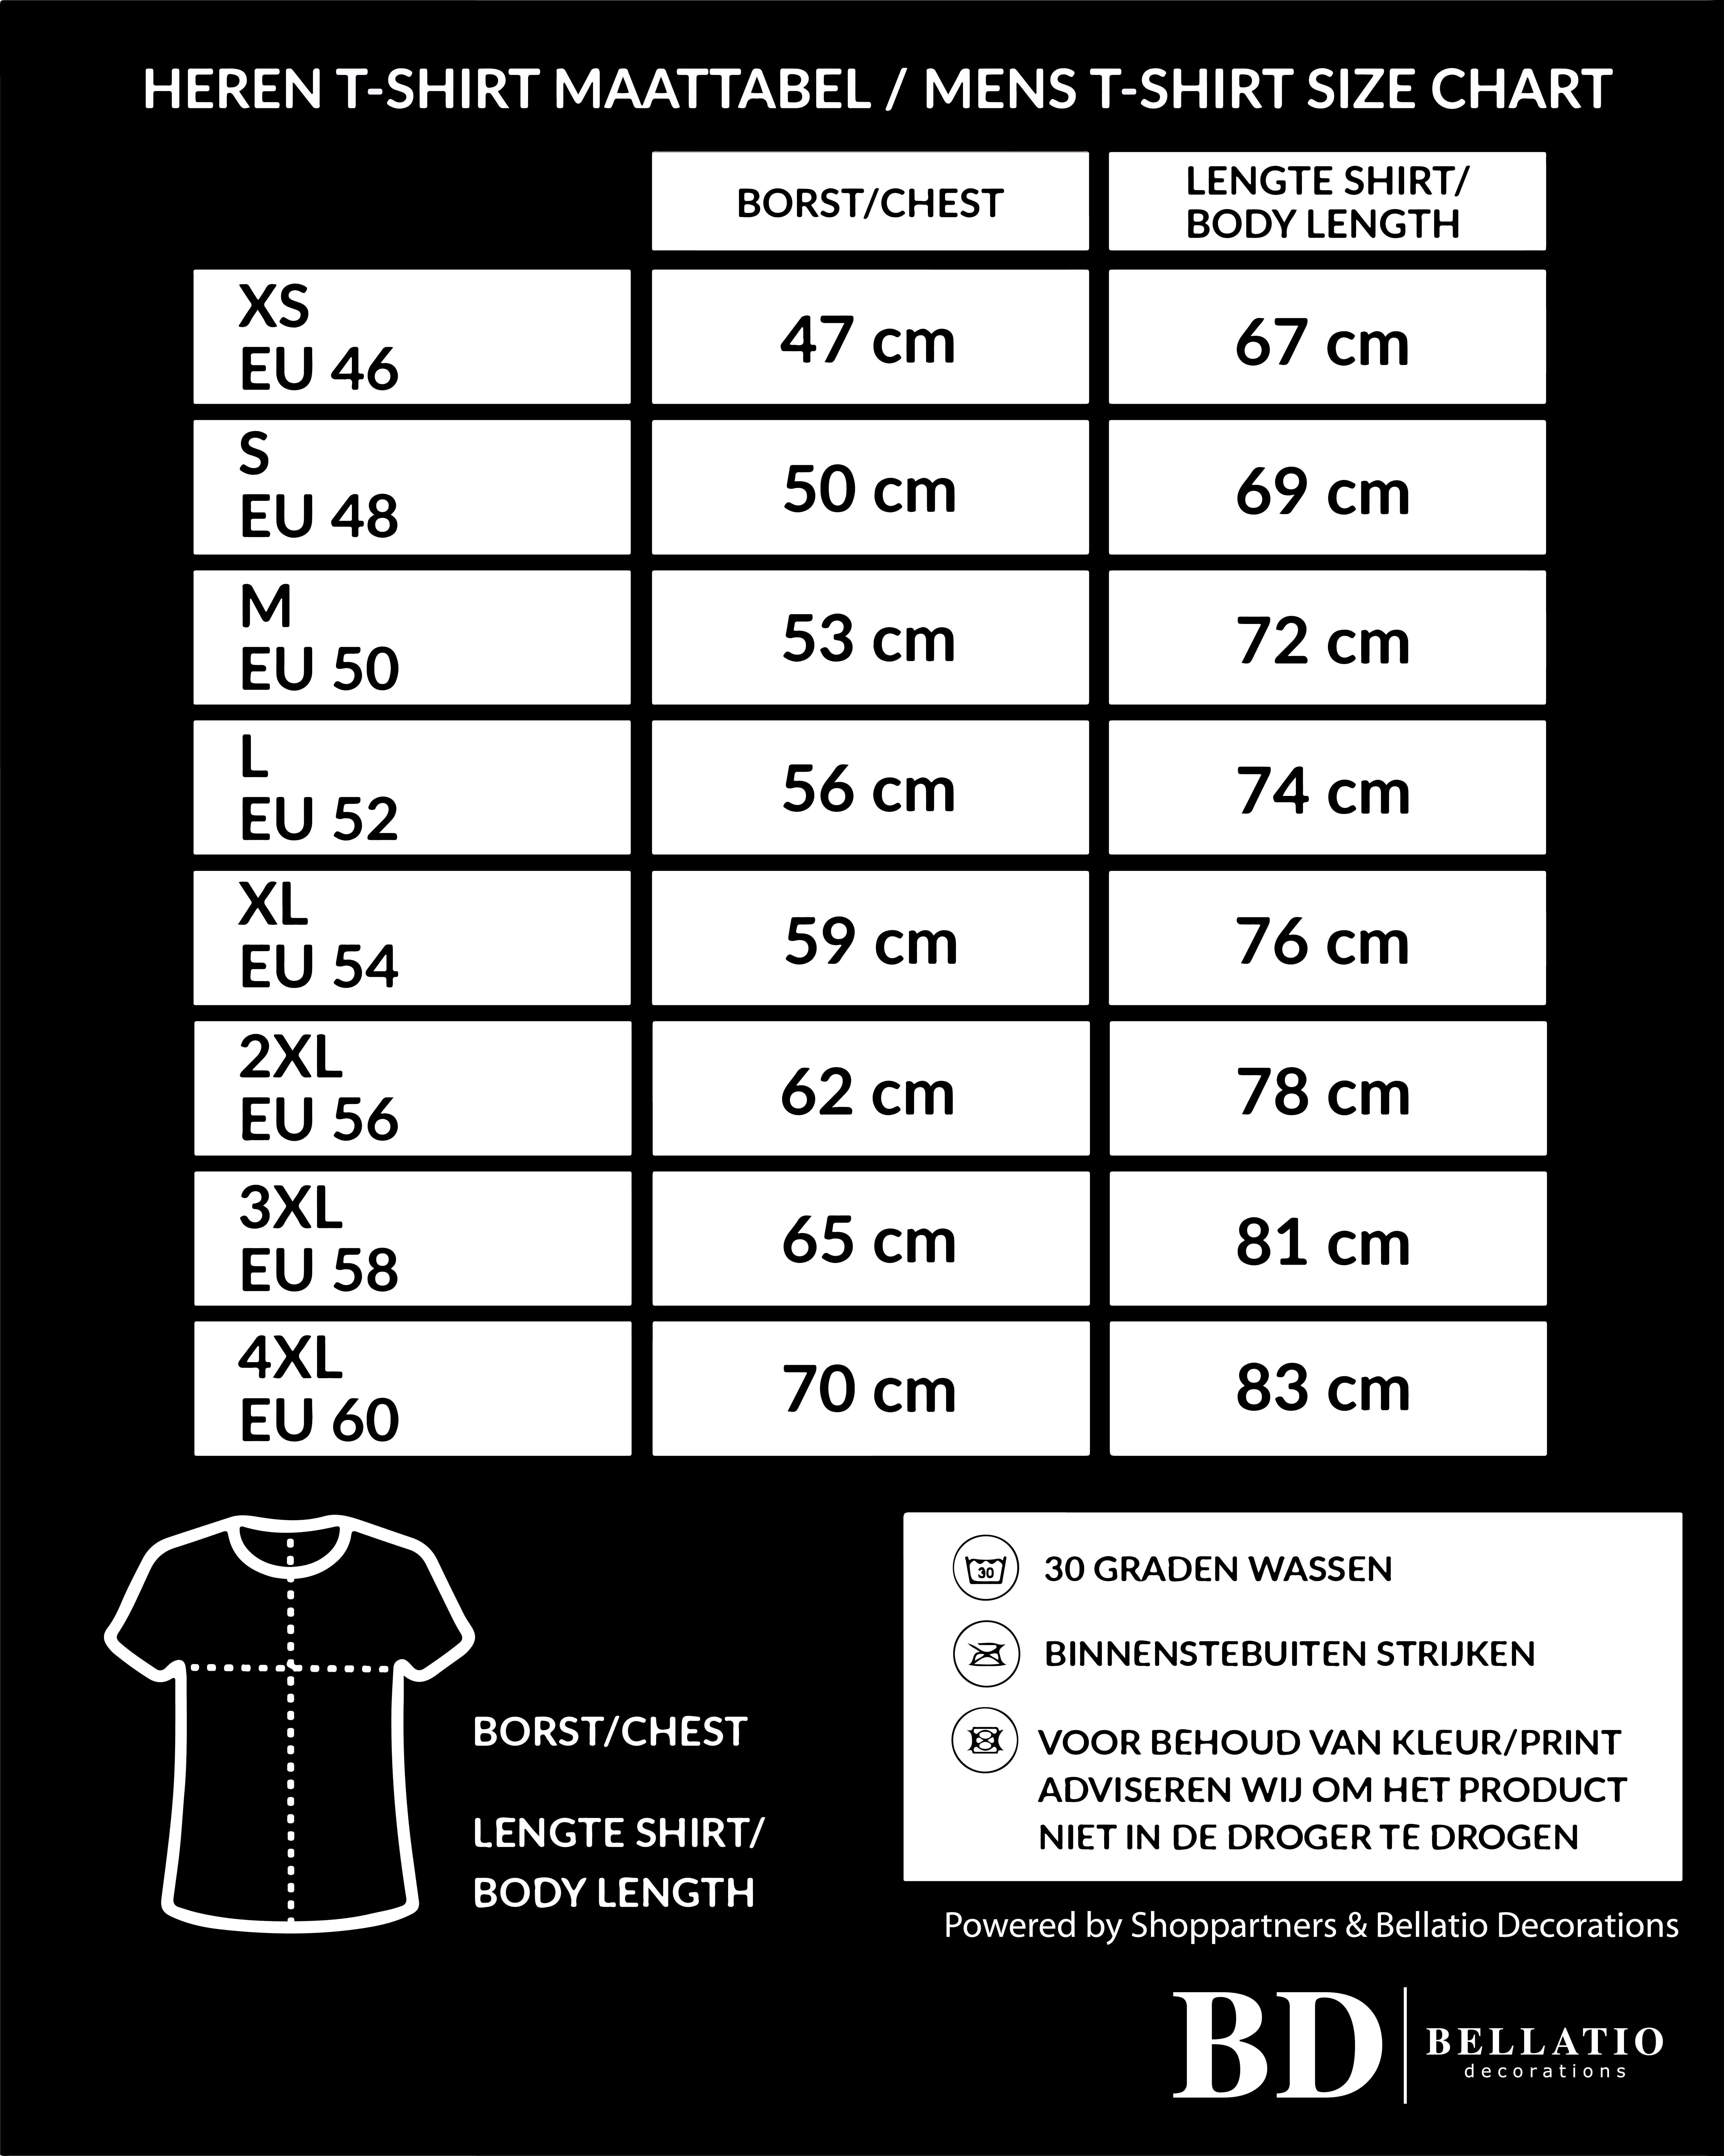 T-shirt mogguh kut - zwart Achterhoek festival shirt voor heren - foute party kleding